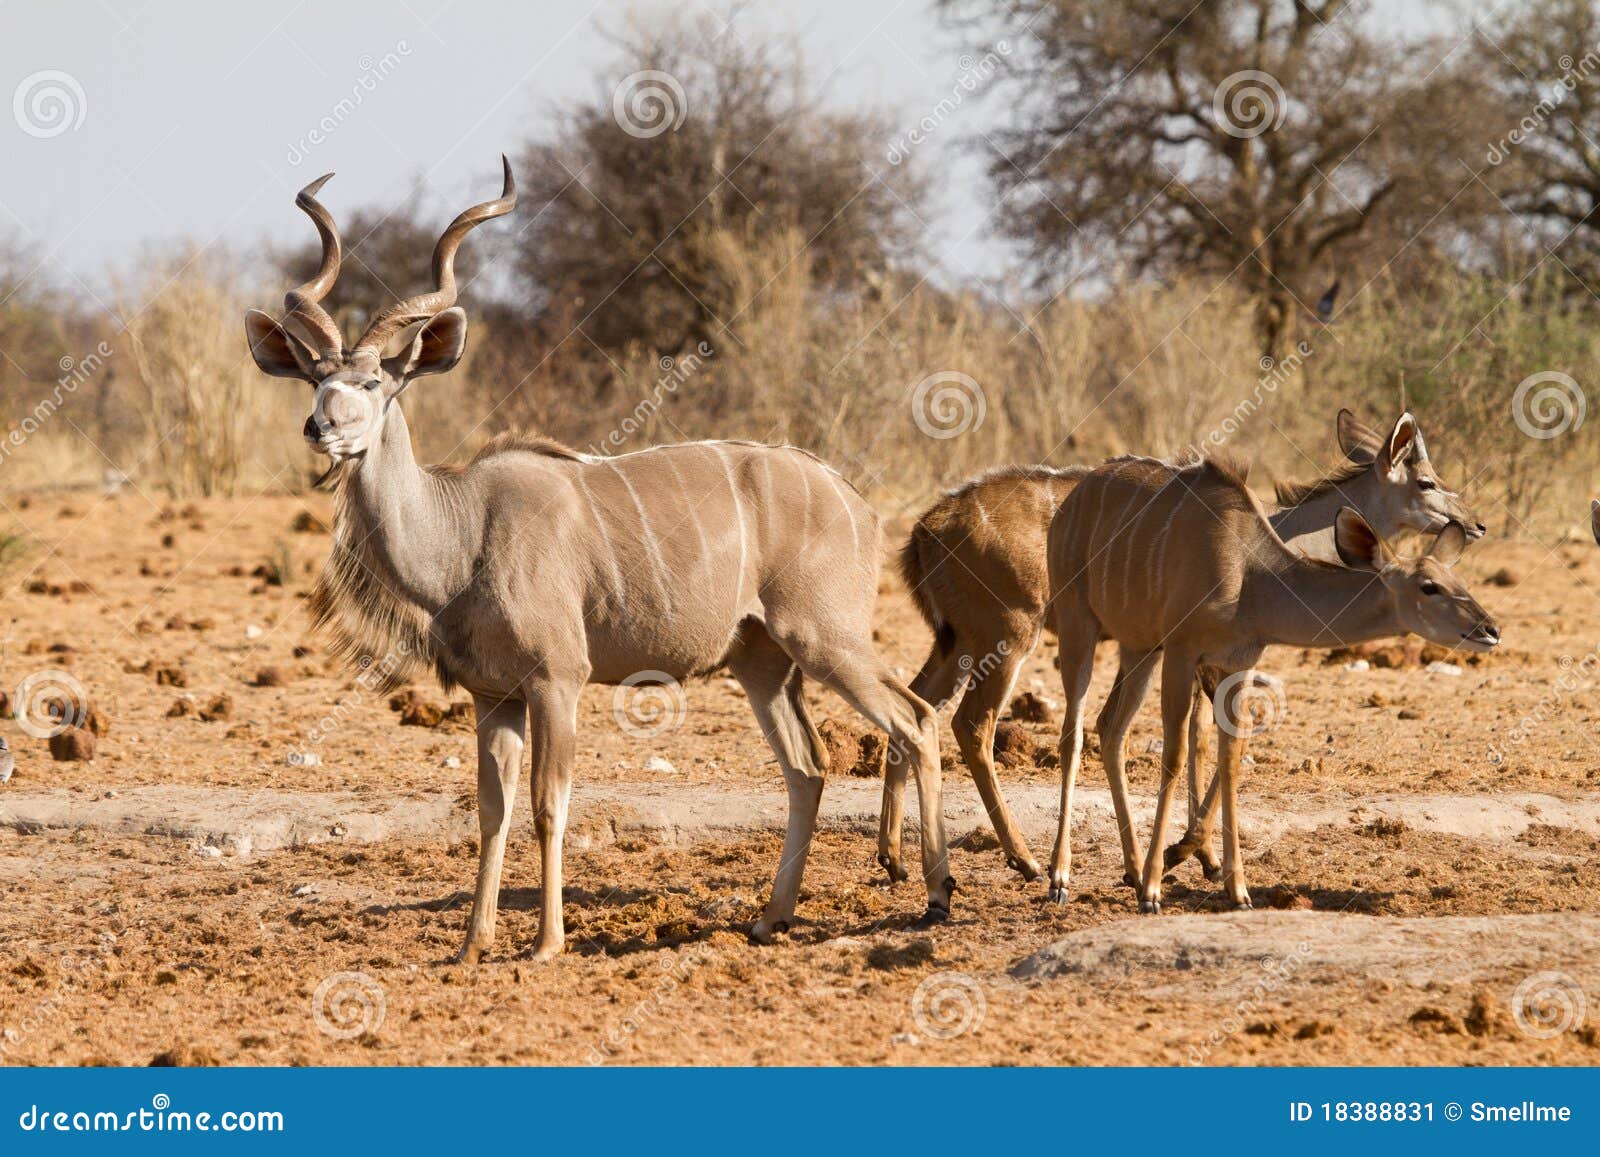 kudu antelopes